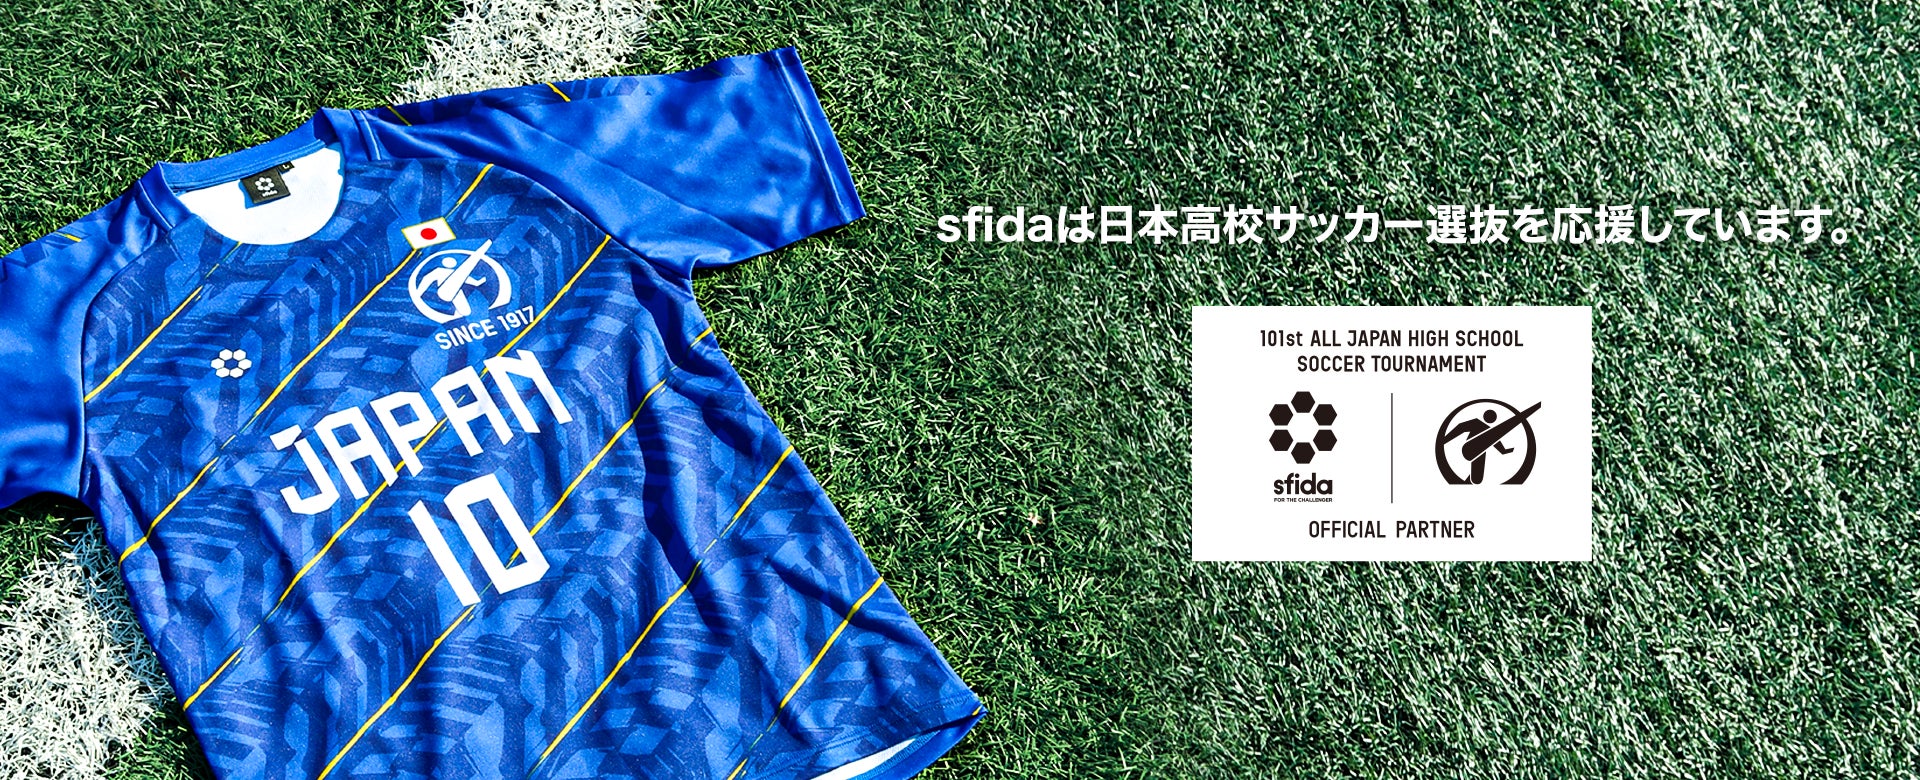 第101回全国高校サッカー選手権から世界へ！sfidaが日本高校サッカー選抜ユニフォームデザインを発表！